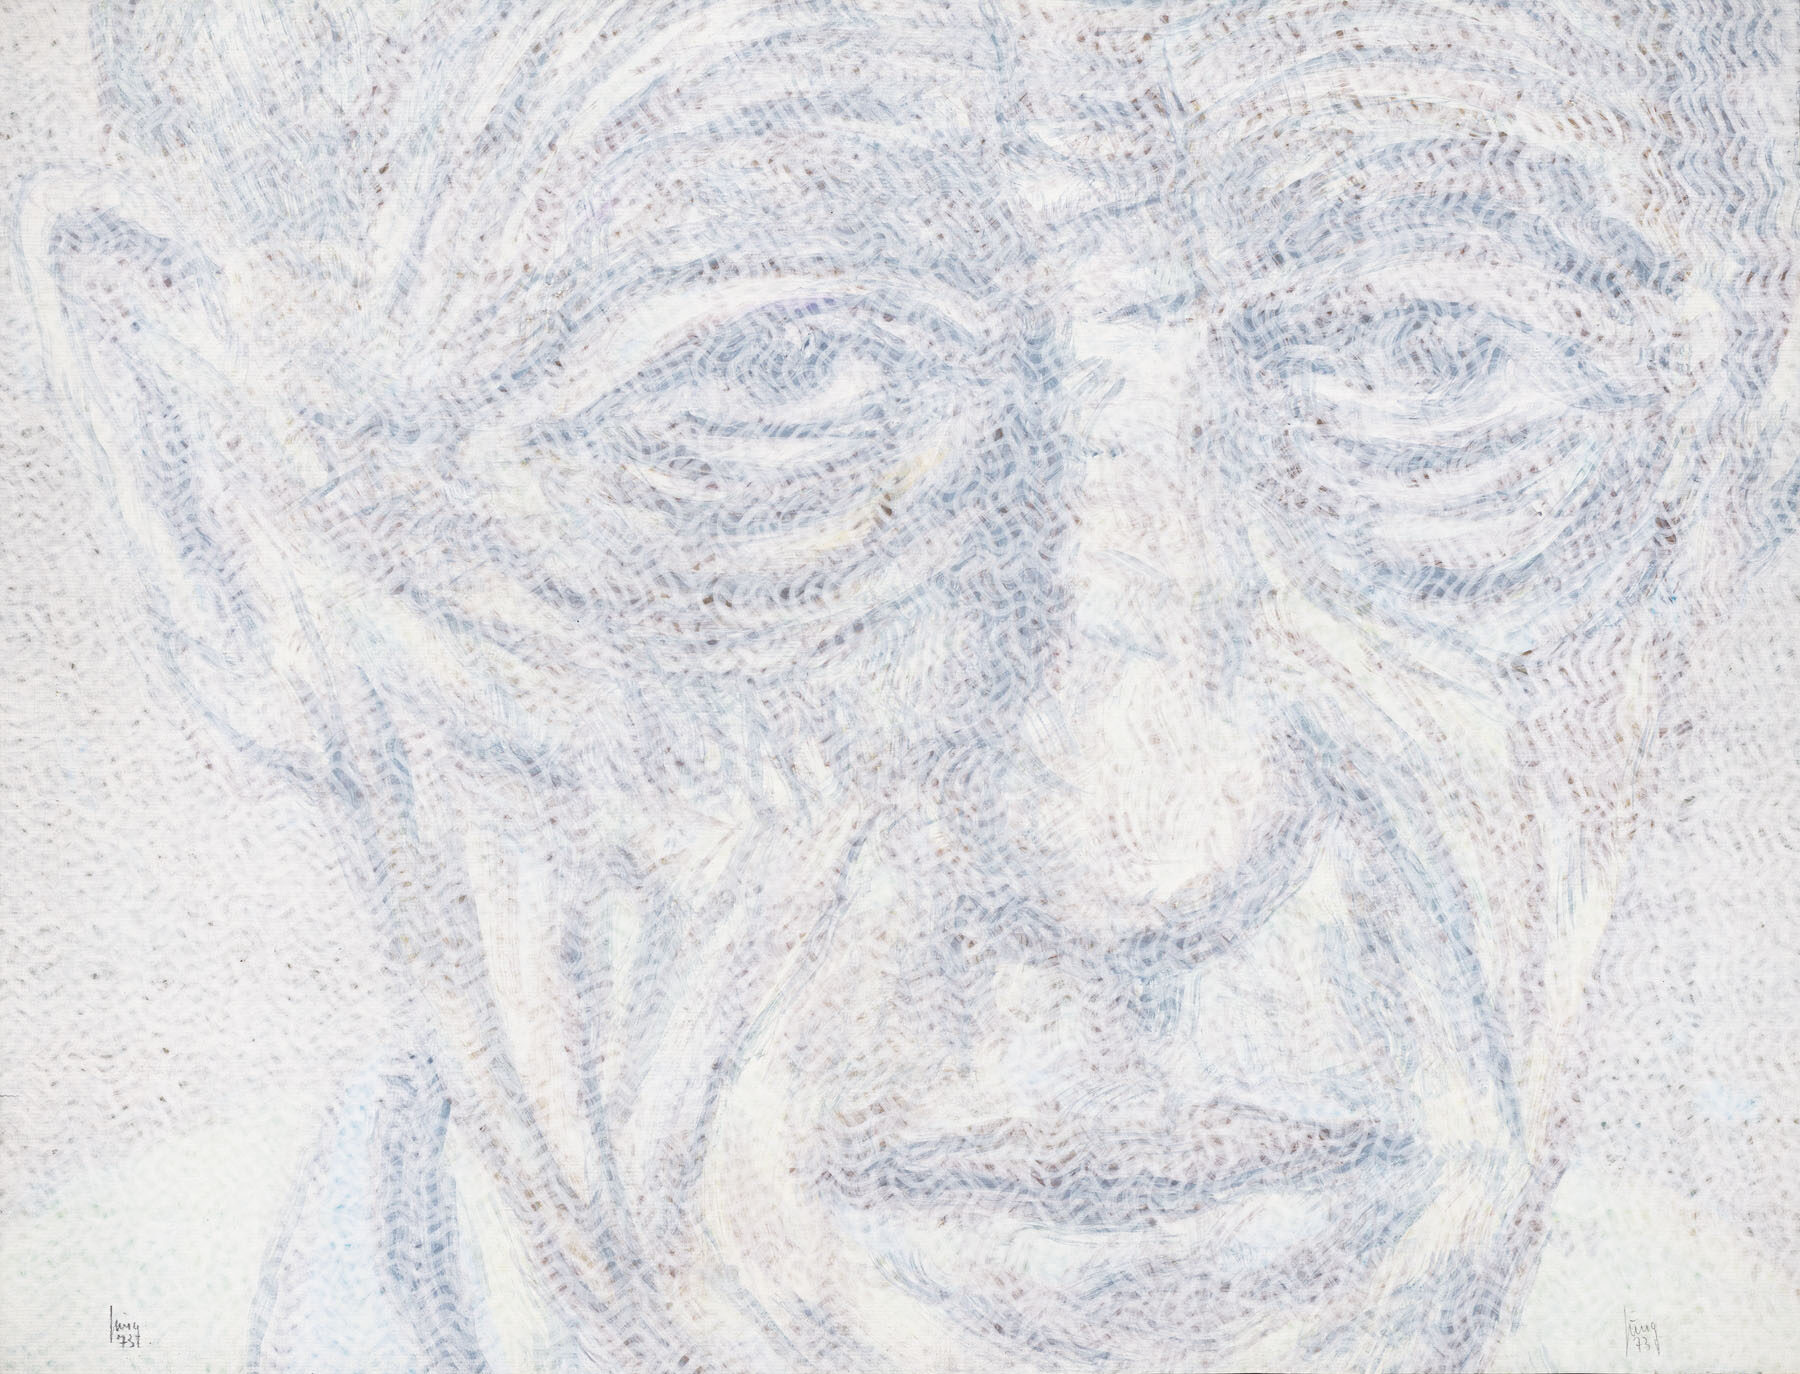 Alberto Giacometti, ein Kopfbild von Dieter Jung